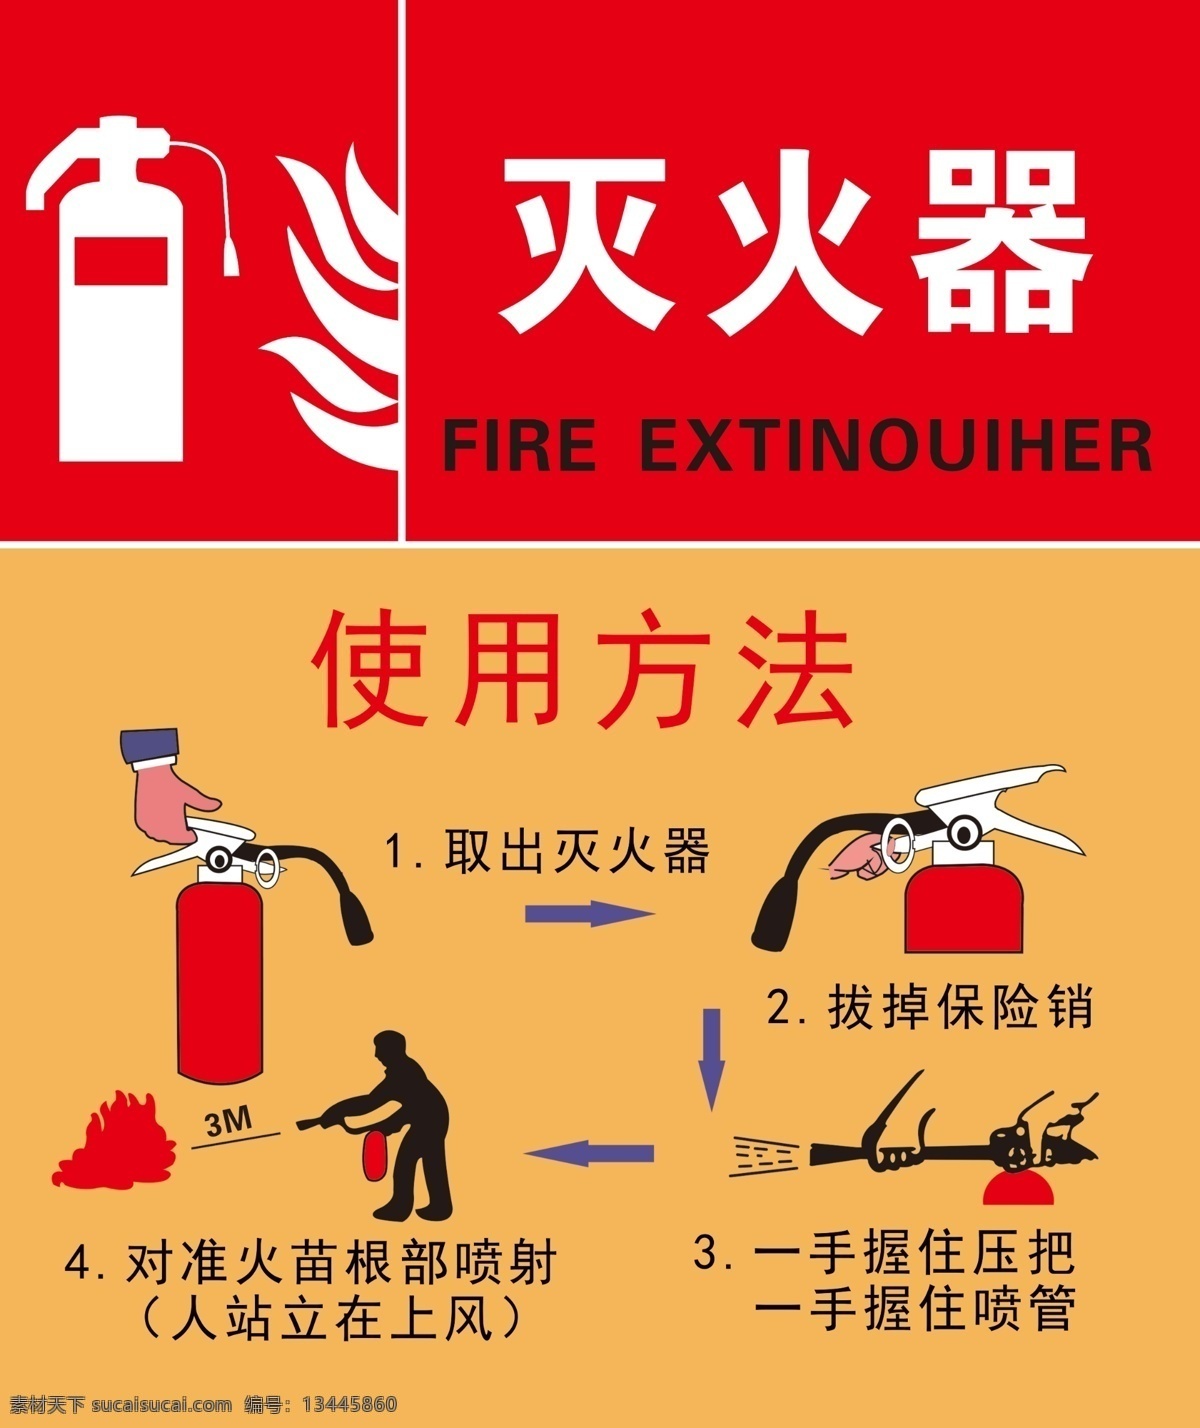 灭火器 使用方法 灭火器使用 方法 消防标识 安全标识 灭火器标识 灭火器说明 室外广告设计